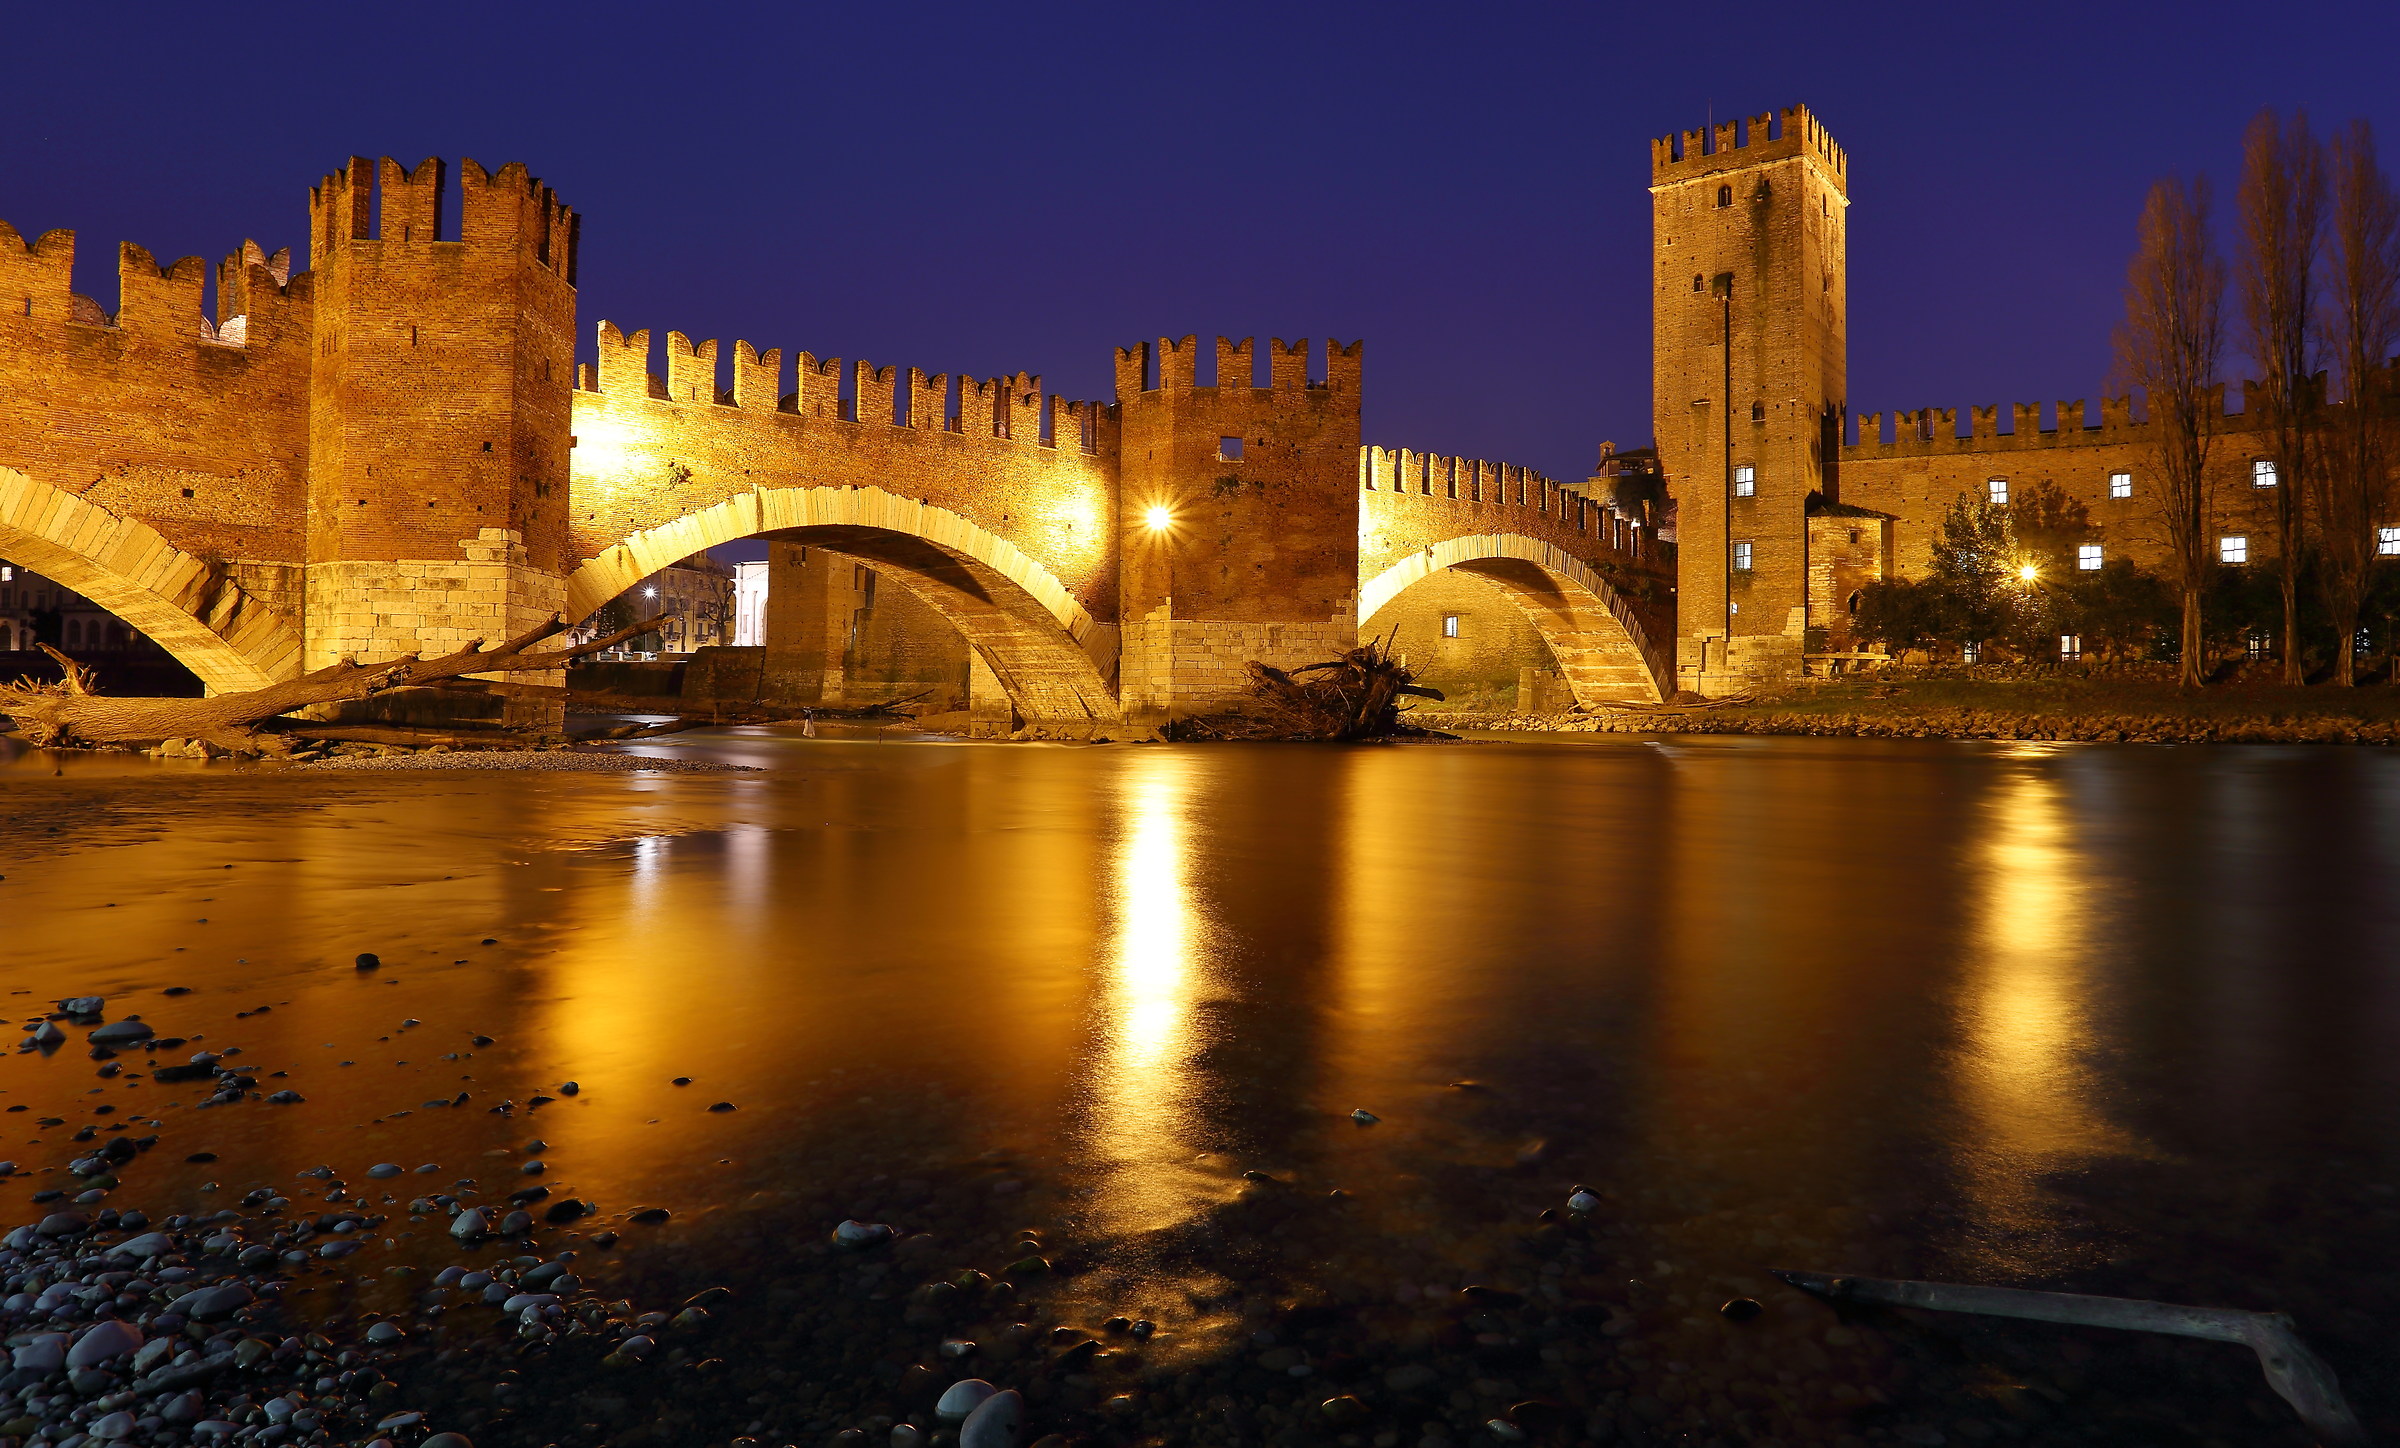 The Castelvecchio bridge after the flood...